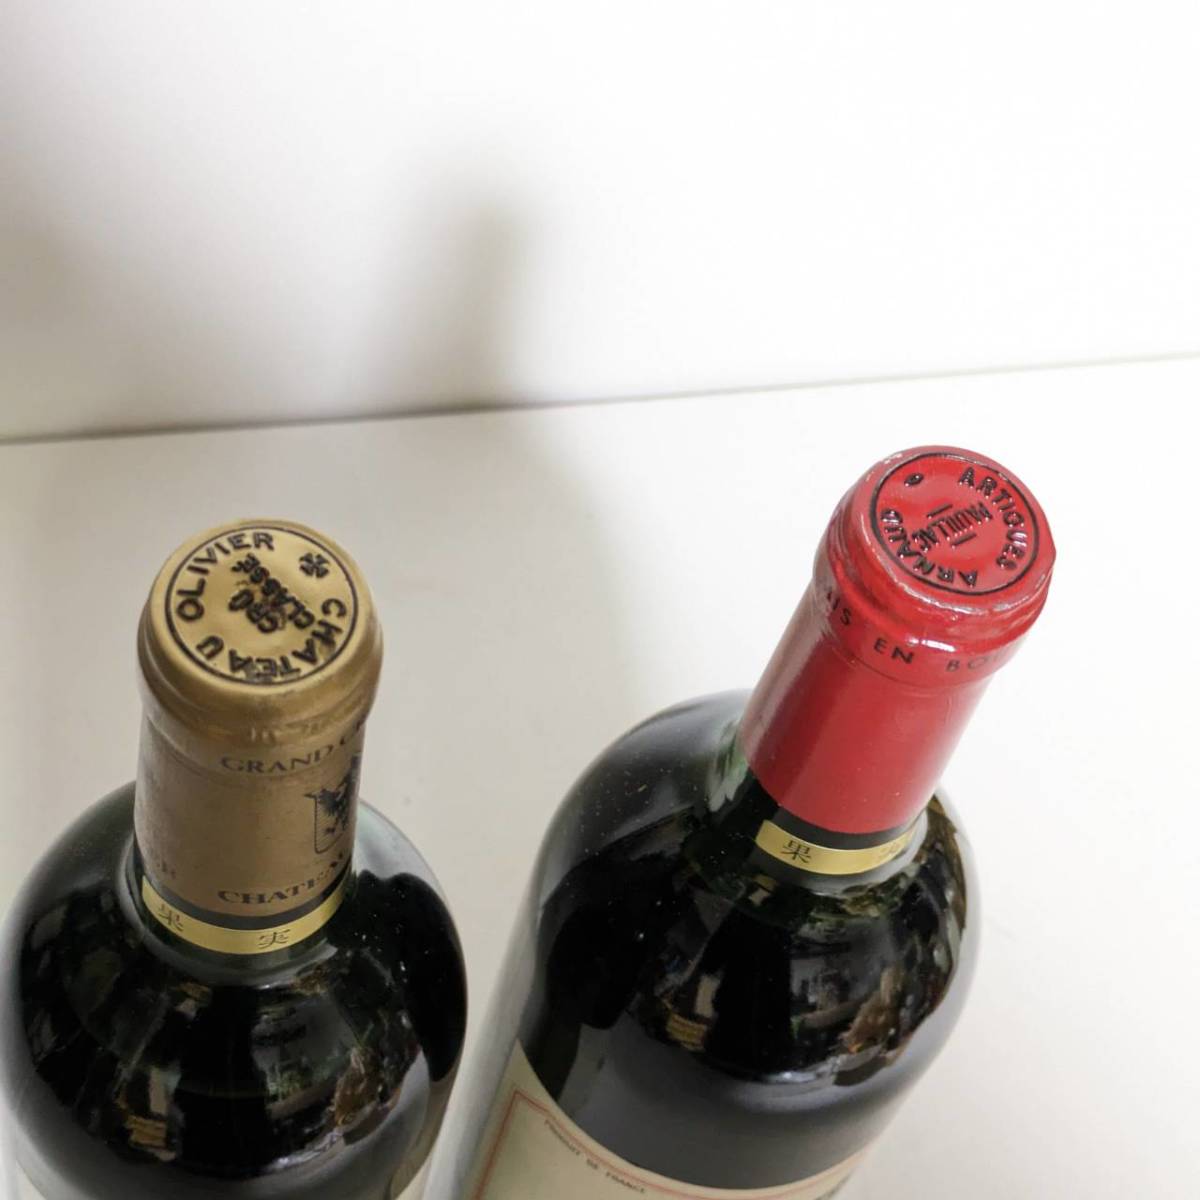 シャトー アルティグ アルノー 1989 CHATEAU ARTIGUES ARNAUD ワイン フランス 750ml/CHATEAU OLIVIER シャトー オリバー 1987/2本セット_画像3